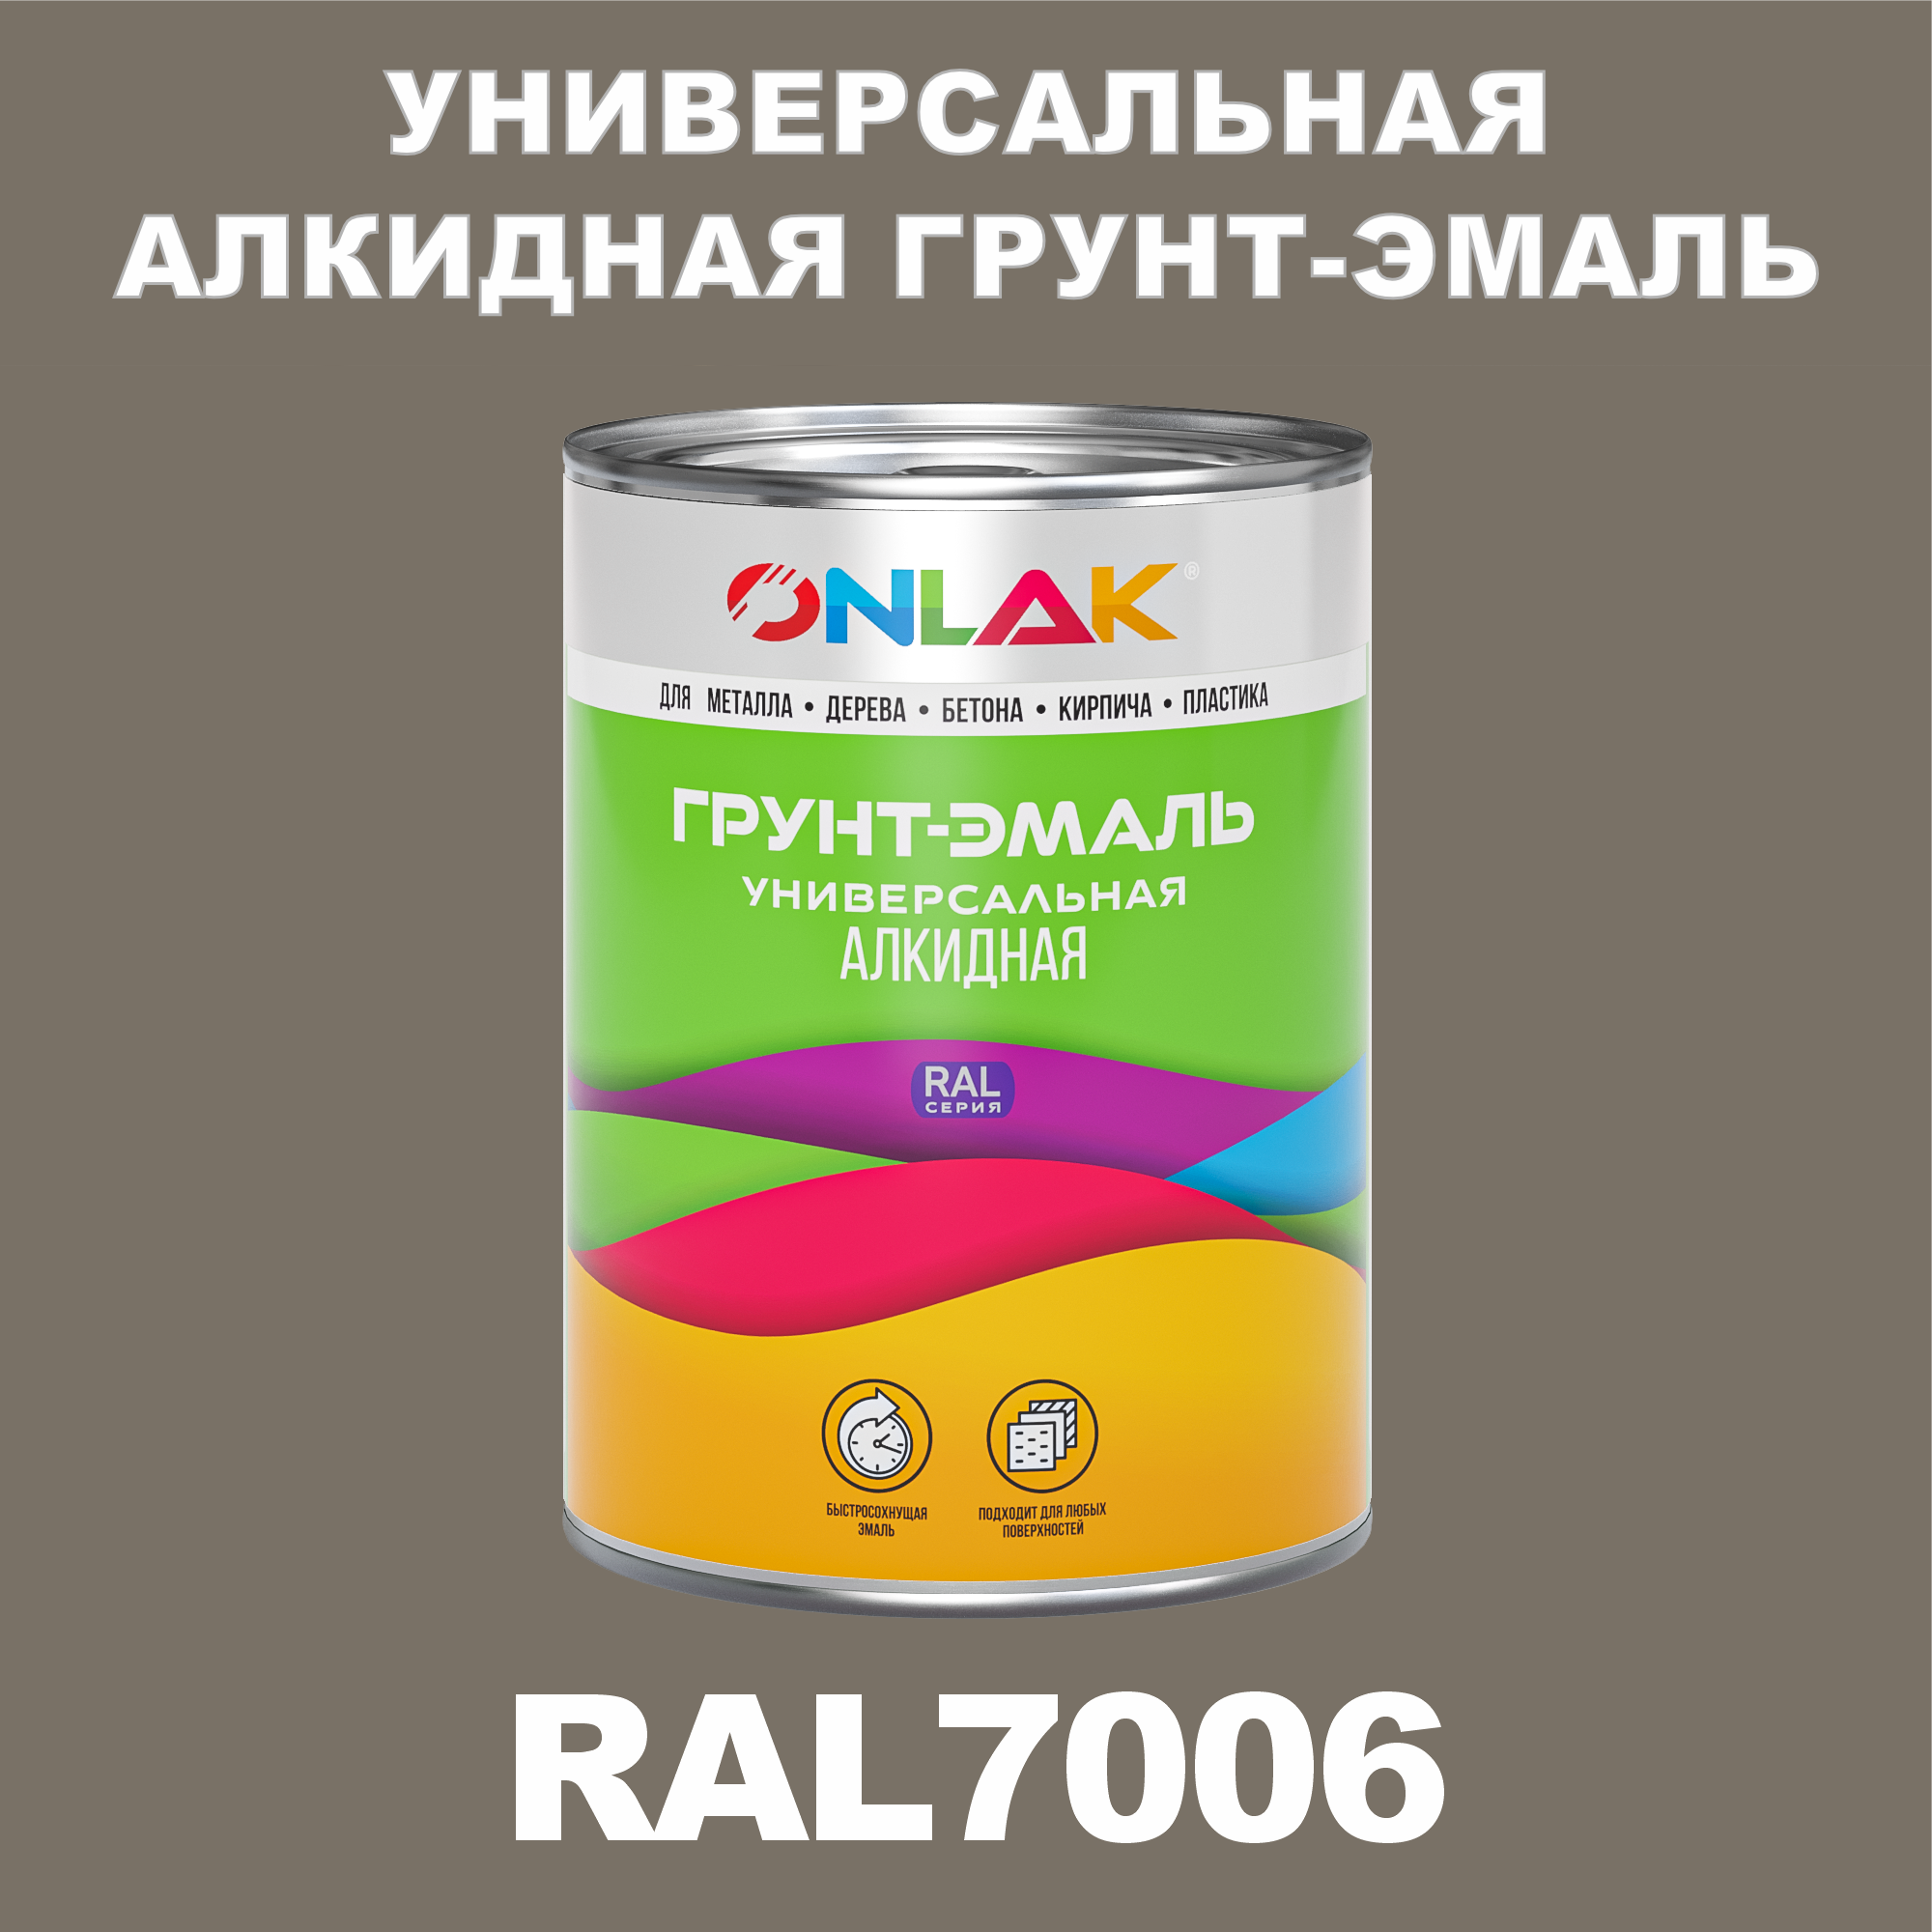 Грунт-эмаль ONLAK 1К RAL7006 антикоррозионная алкидная по металлу по ржавчине 1 кг грунт эмаль престиж по ржавчине алкидная зеленая 1 9 кг